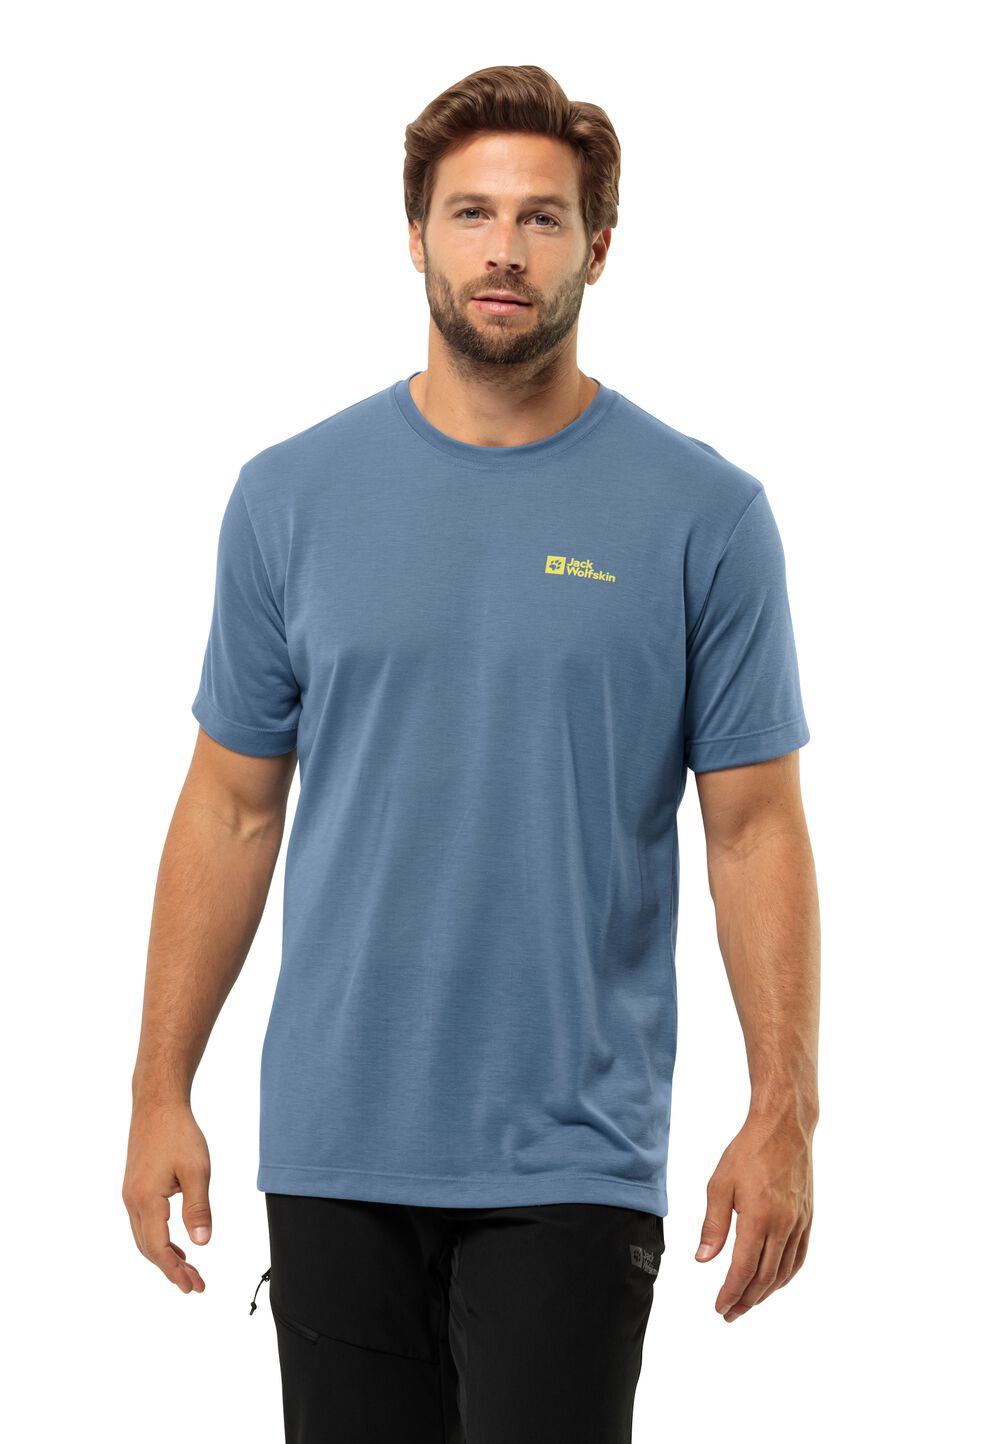 Jack Wolfskin Vonnan S S T-Shirt Men Functioneel shirt Heren XL elemental blue elemental blue